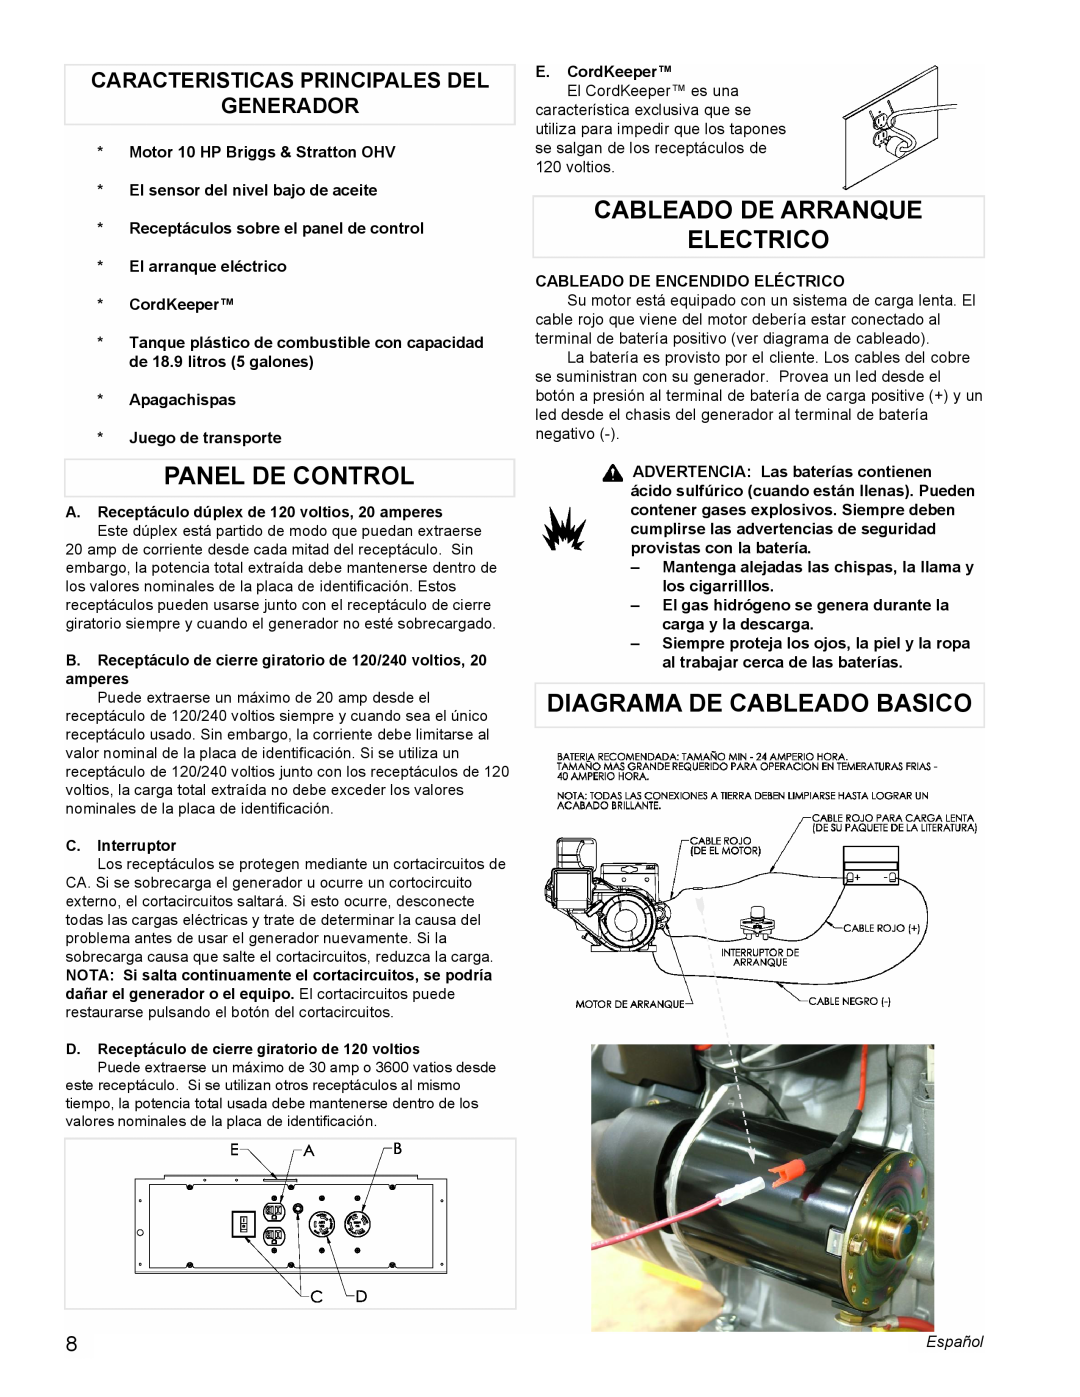 Powermate PMC505622 manual Panel De Control, Cableado De Arranque Electrico, Diagrama De Cableado Basico 